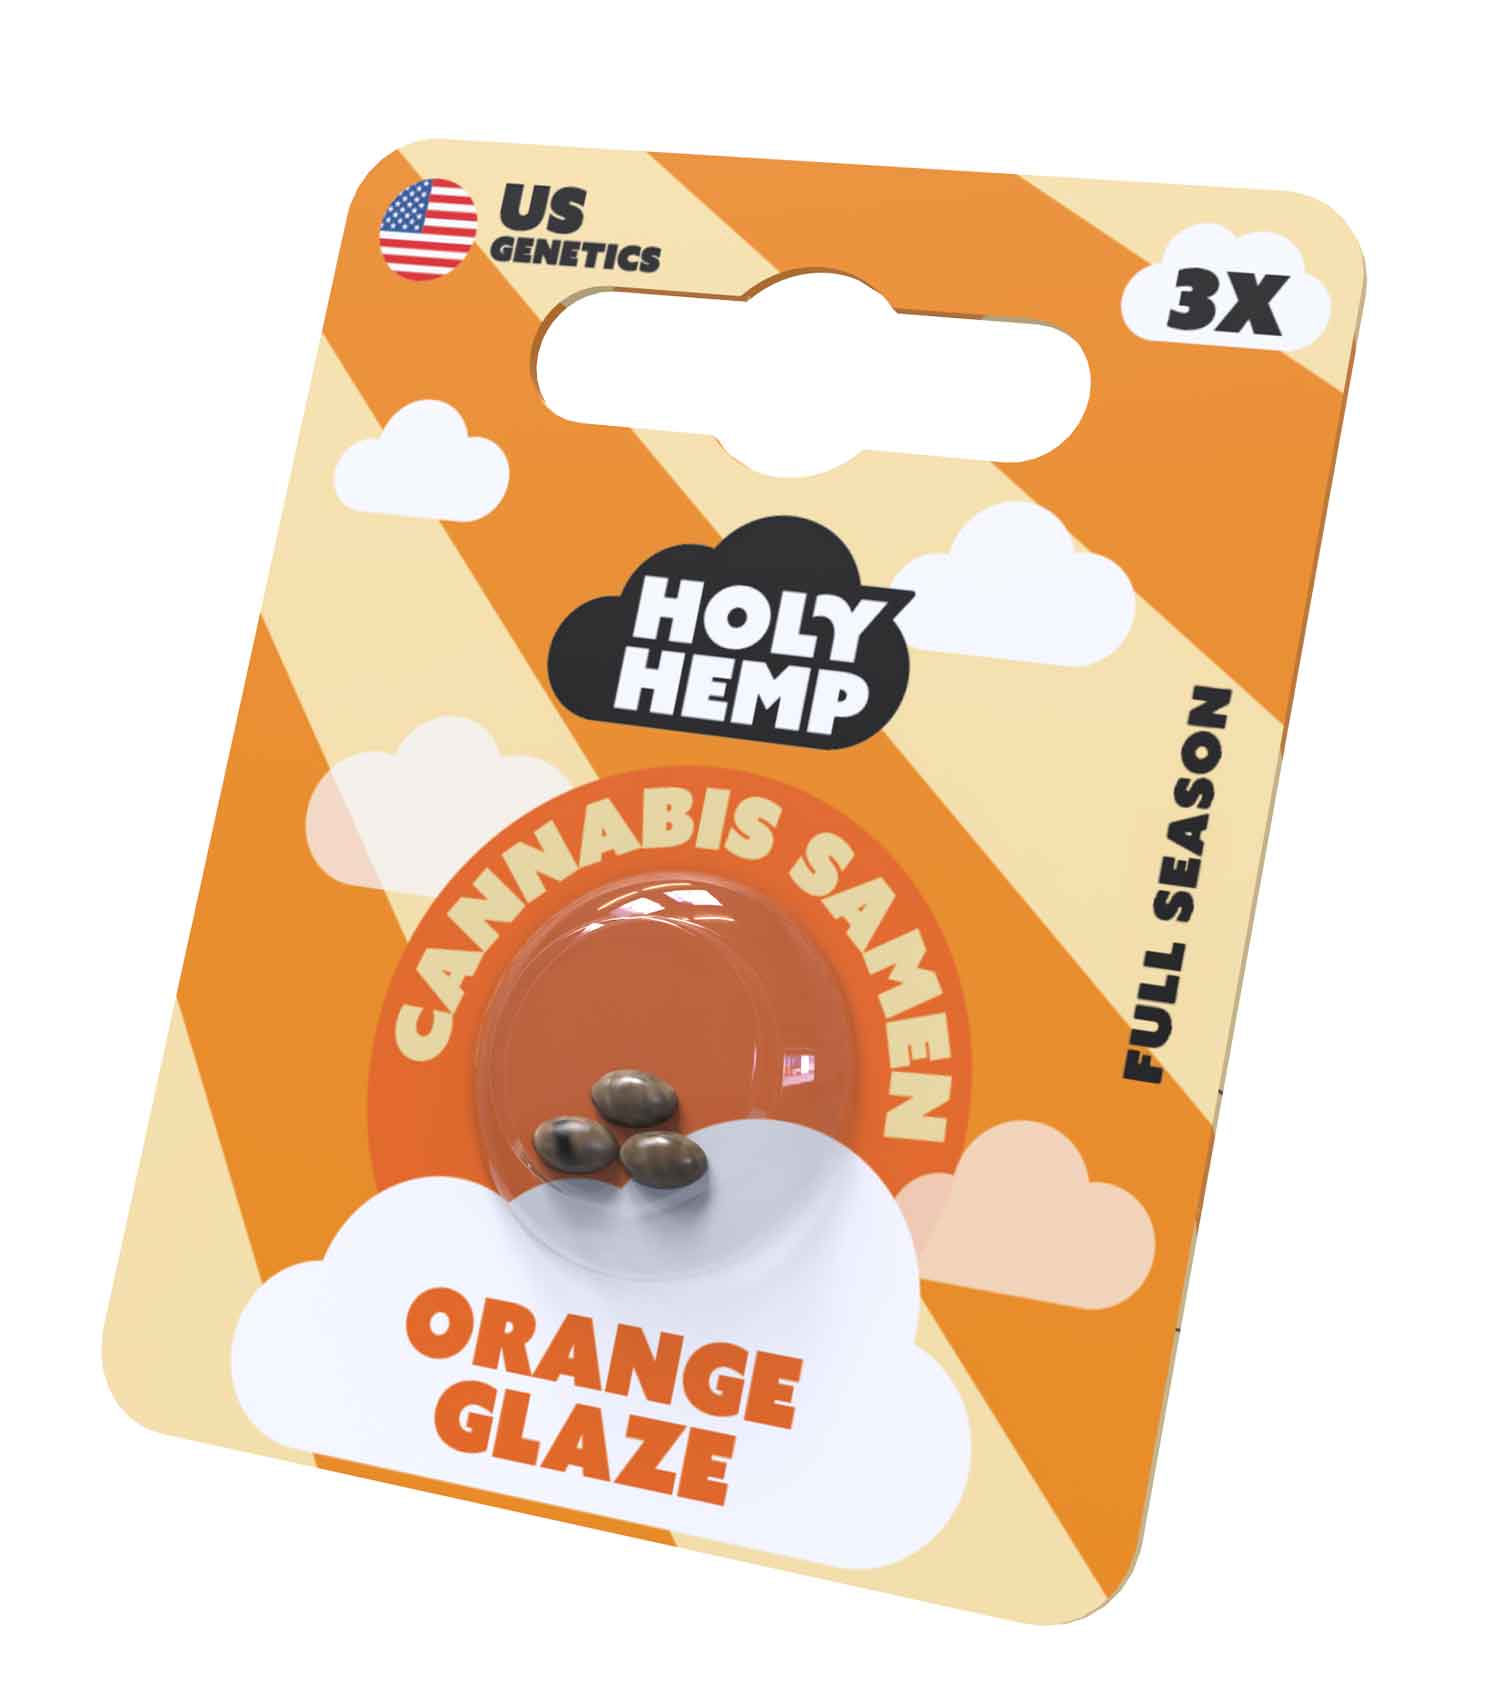 Orange Glaze Cannabissamen